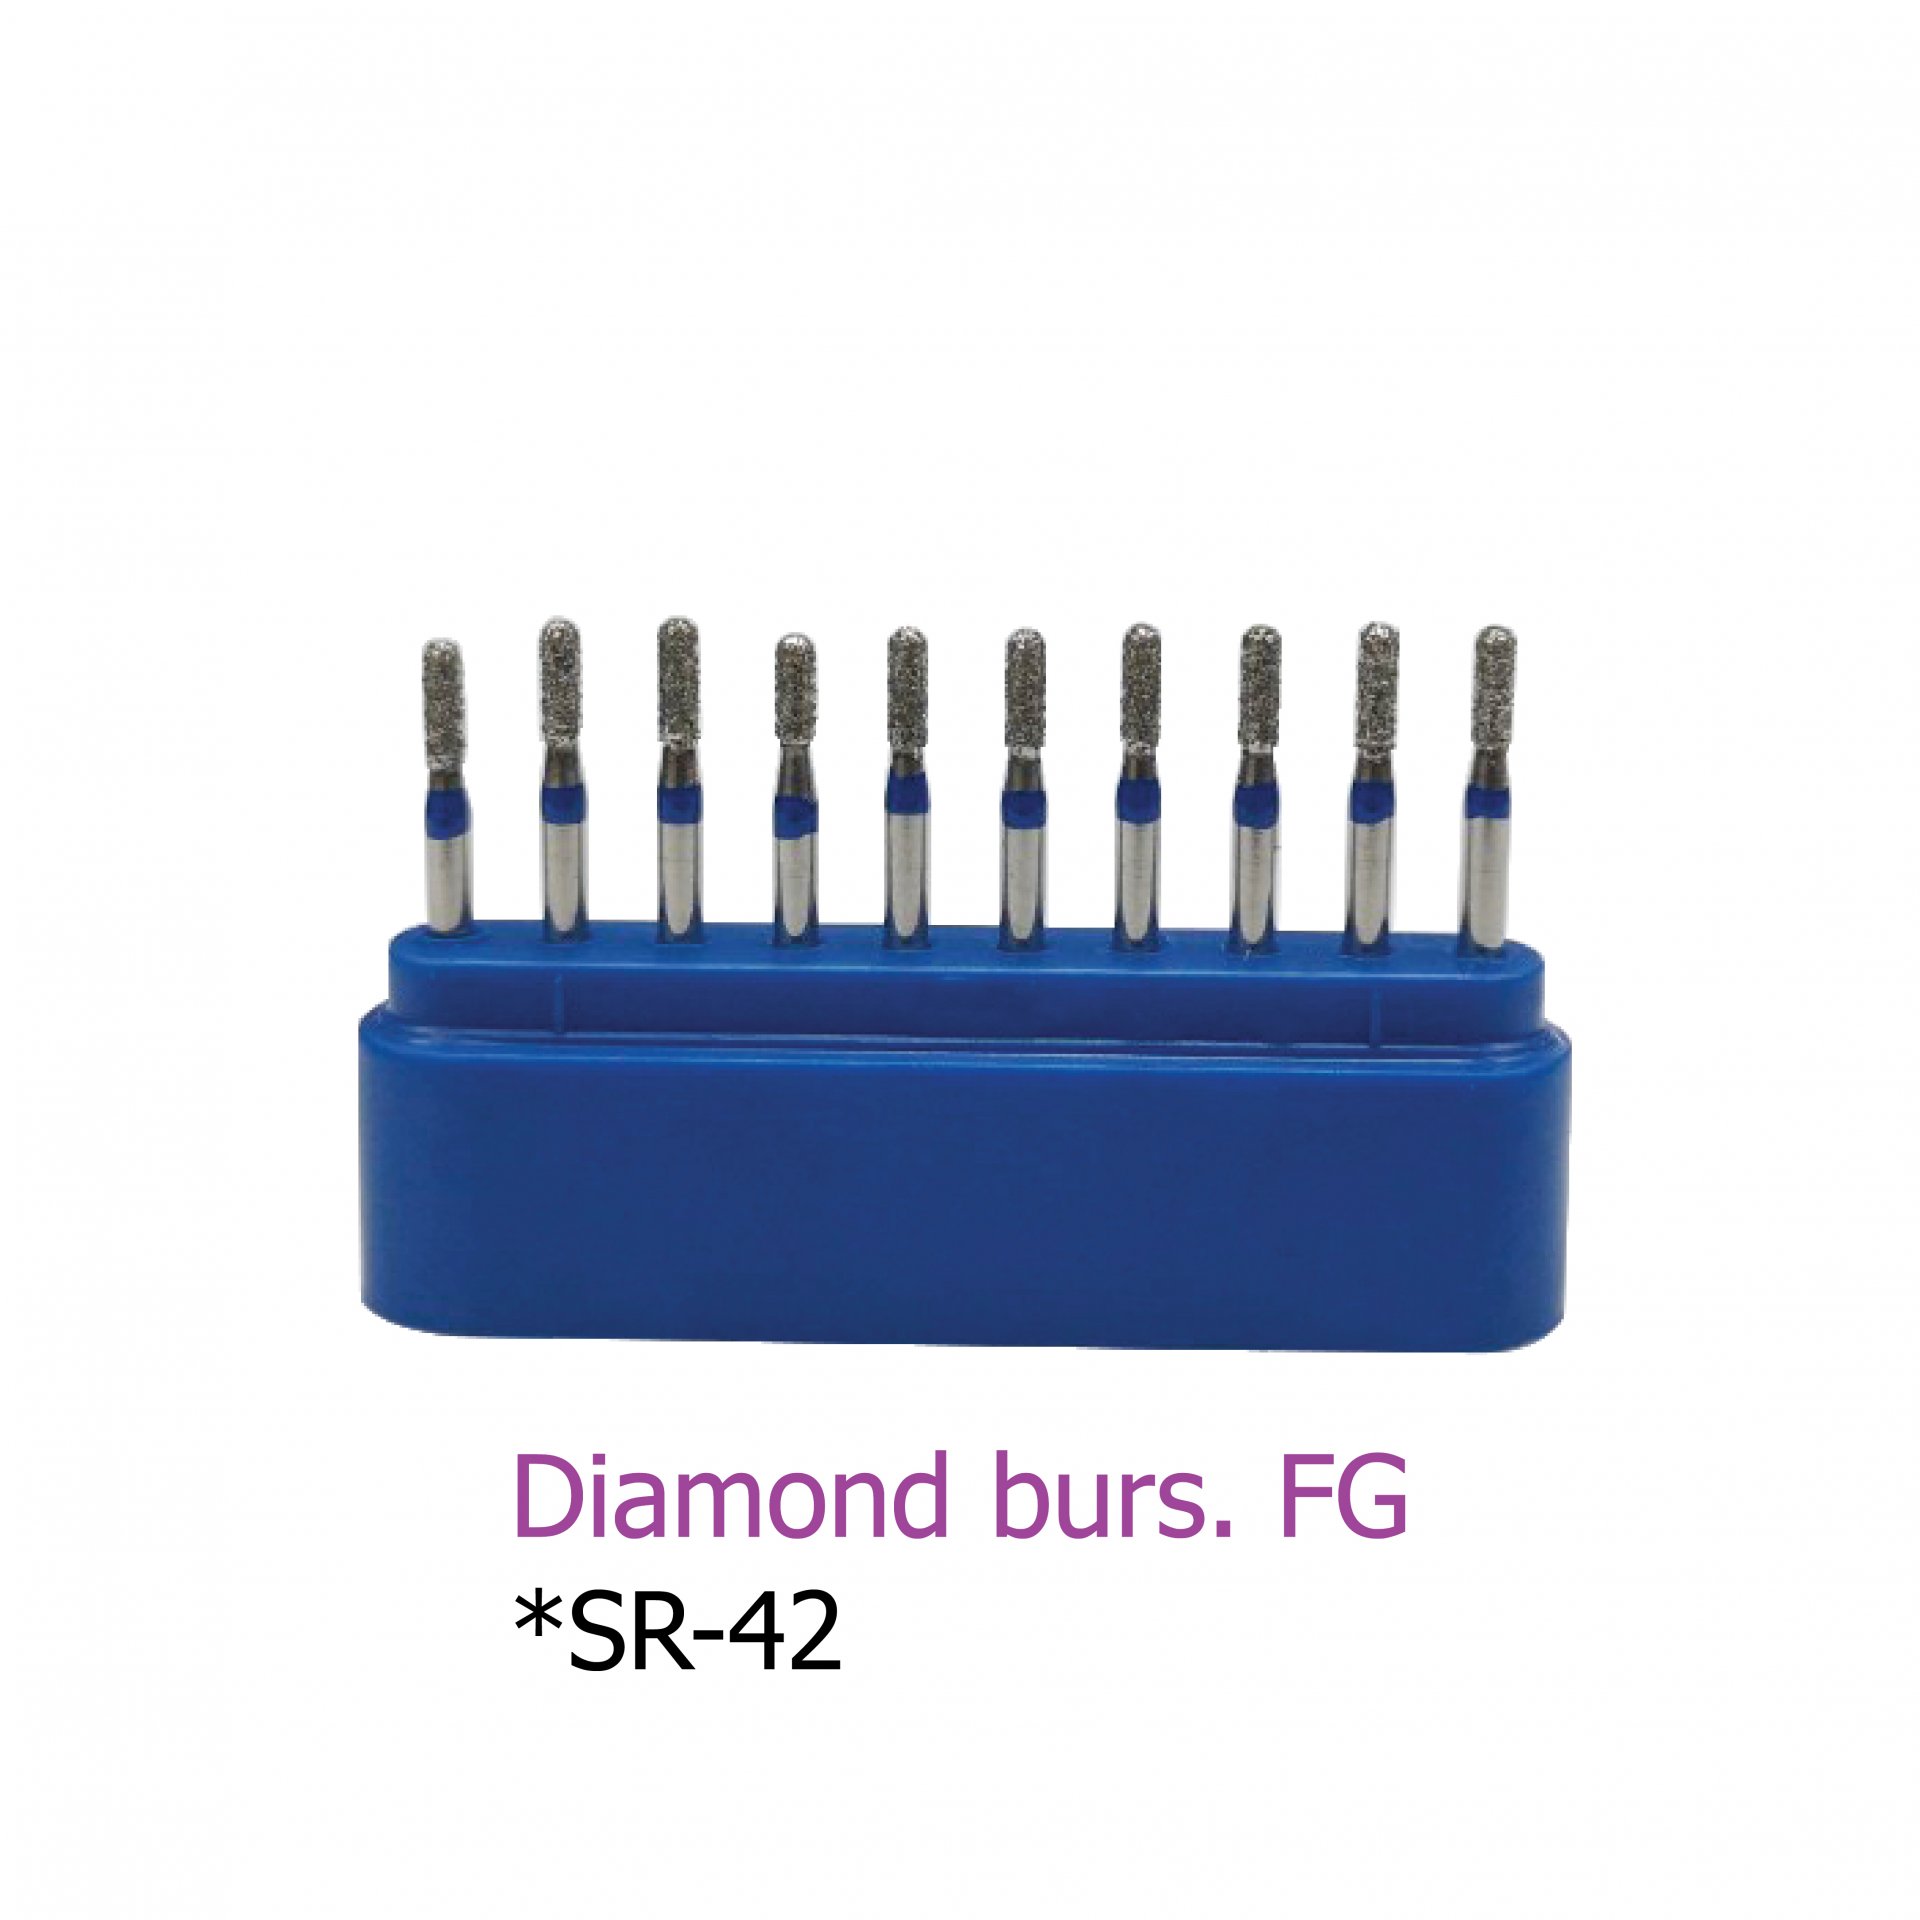 Diamond burs. FG *SR-42